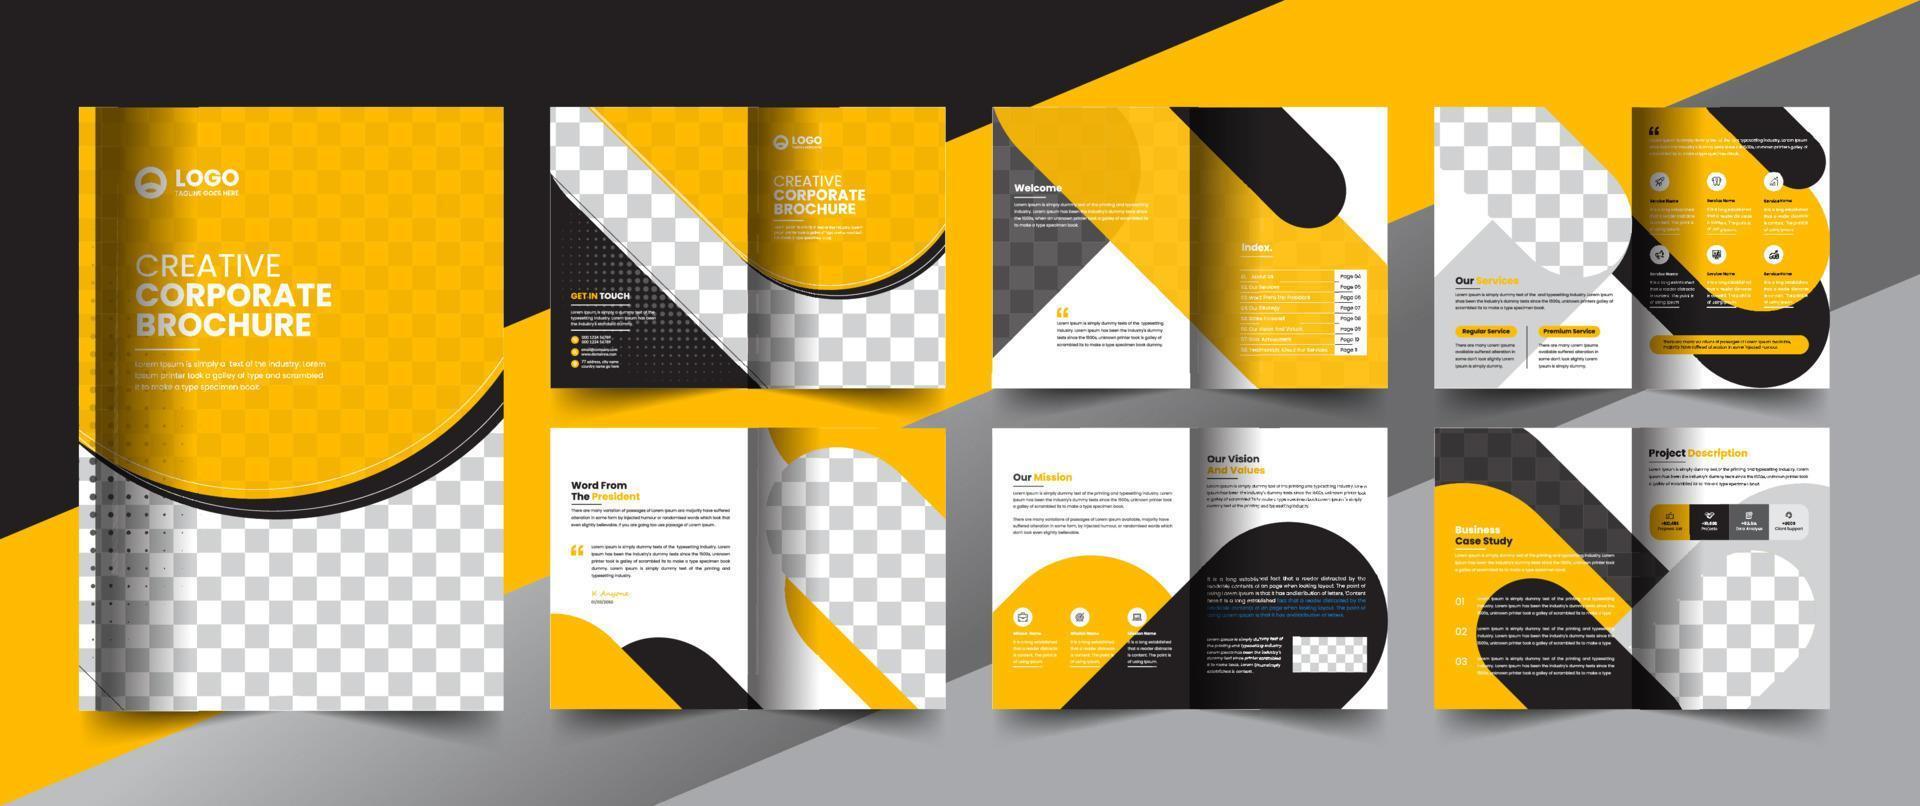 företagets företagsprofil broschyr årsredovisning häfte affärsförslag layout konceptdesign vektor